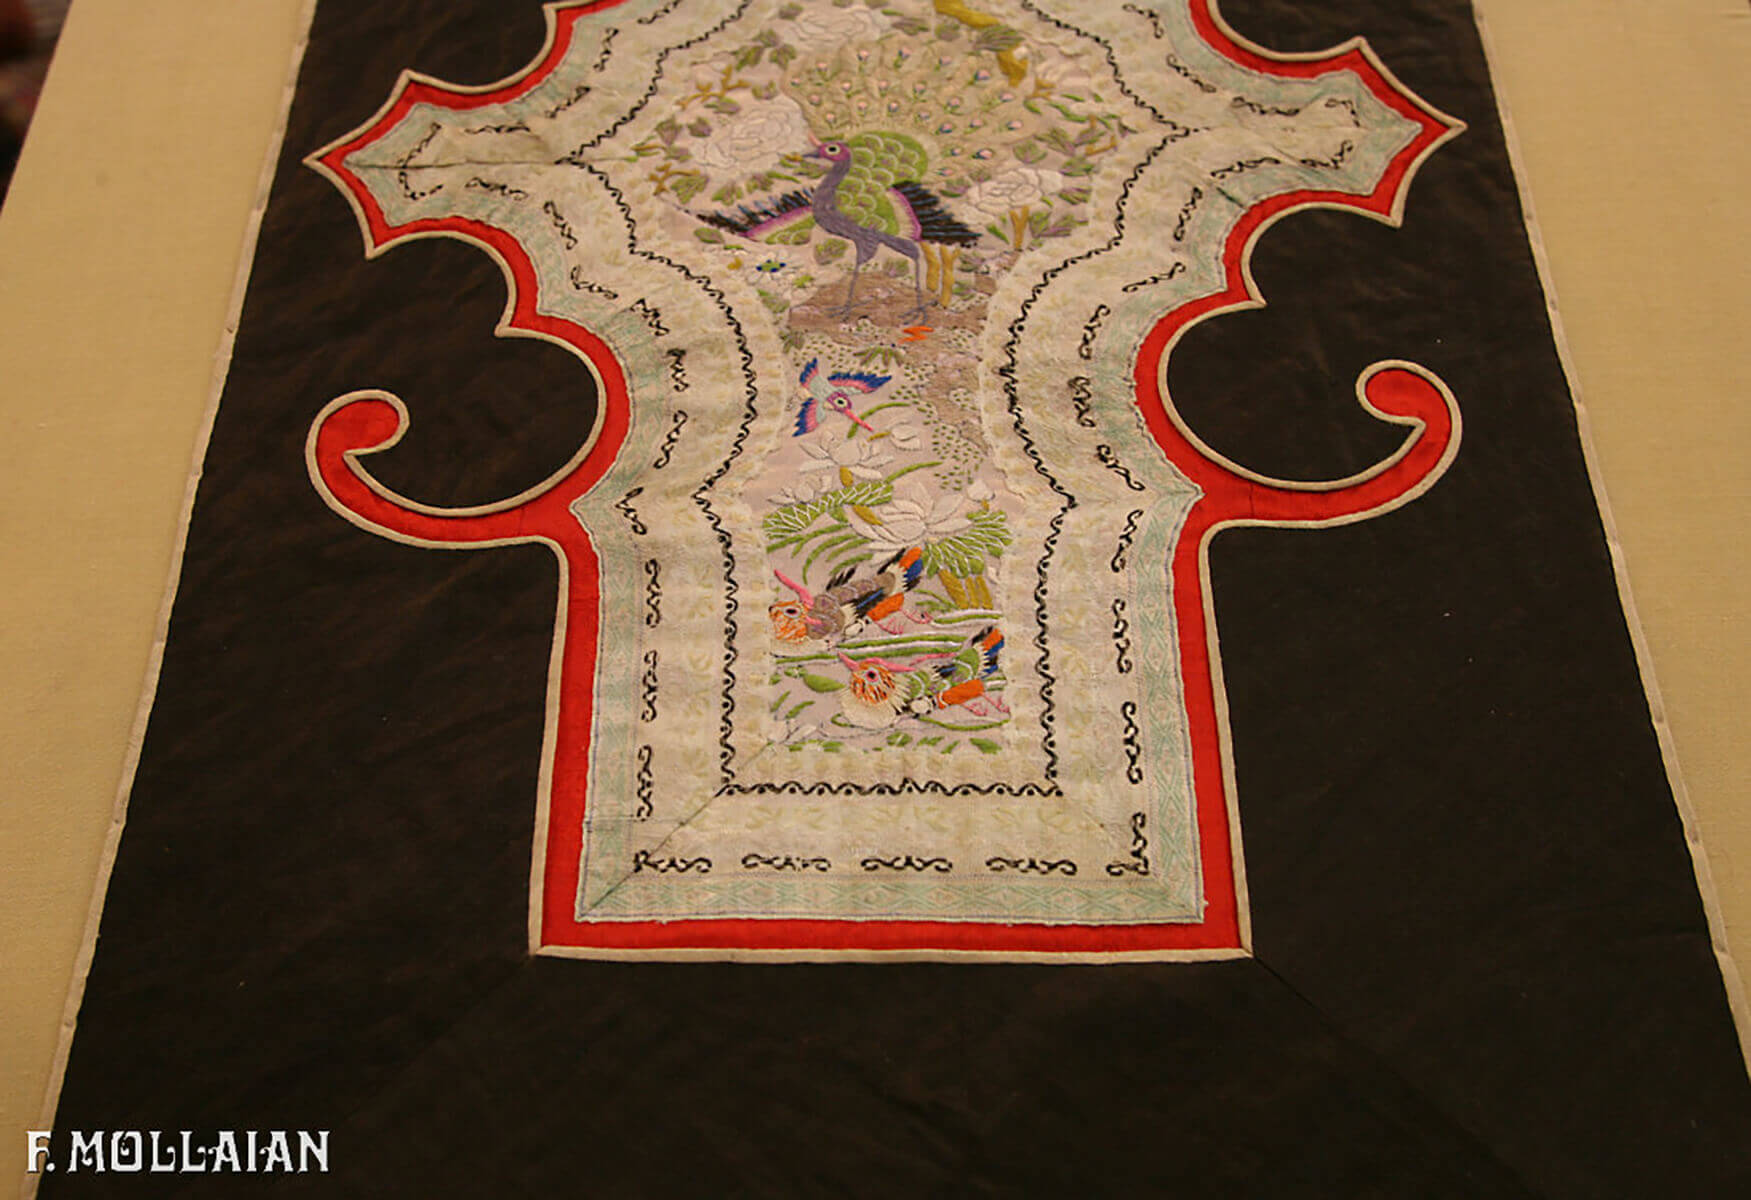 Textil Chinesischer Antiker Seide n°:29084486